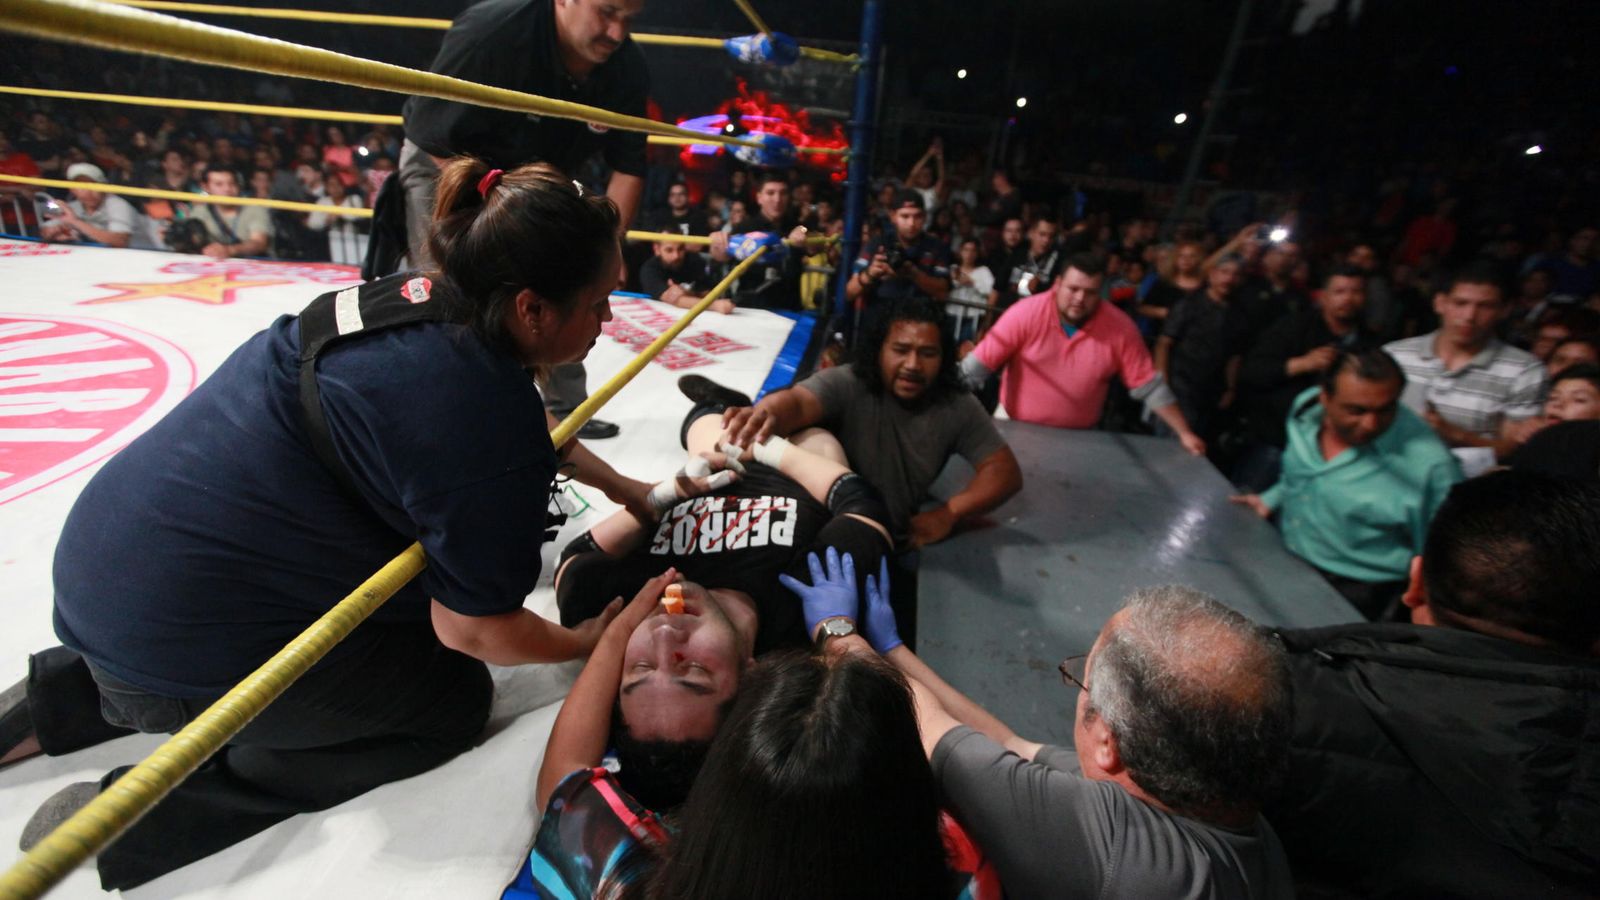 Foto: Momento en el que Hijo del Perro Aguayo es retirado en camilla del ring.